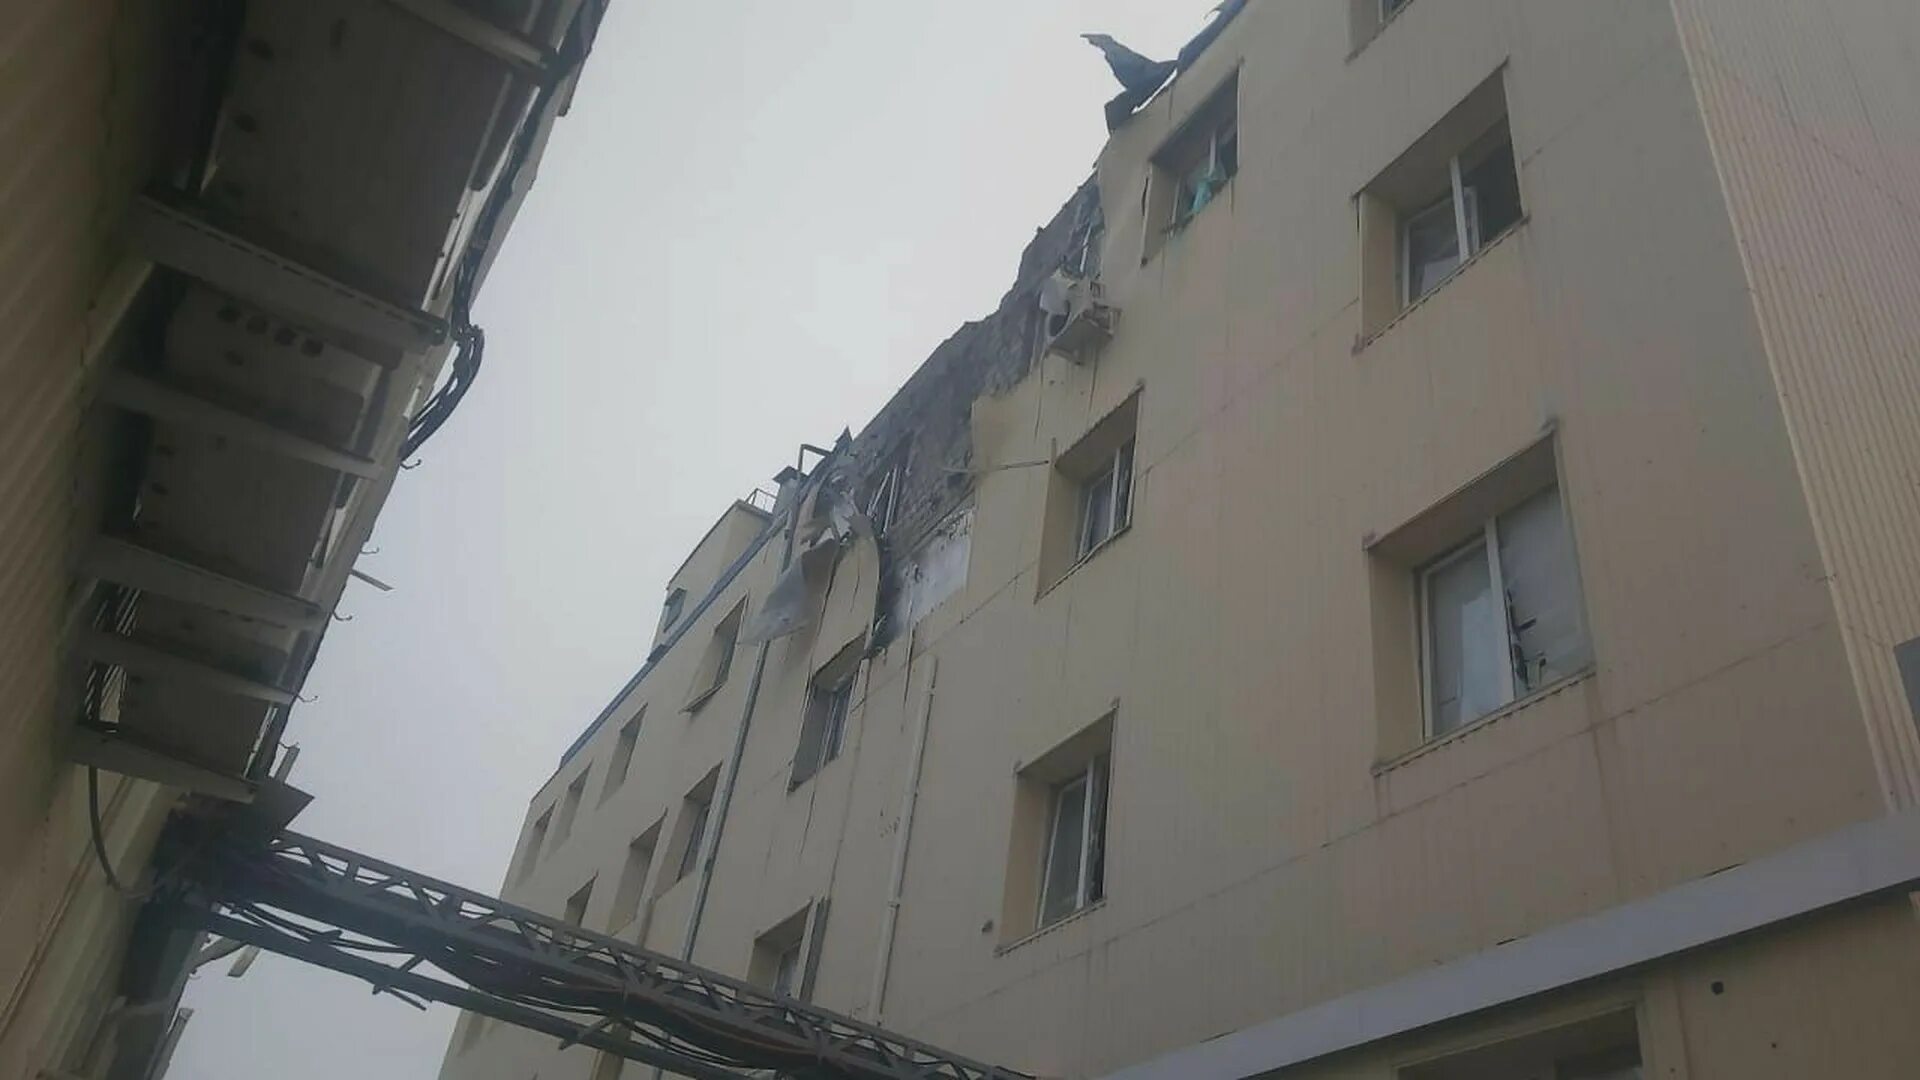 Дом упал. Пожар в административном здании. Пятиэтажка фото. В краснодарском крае был взрыв